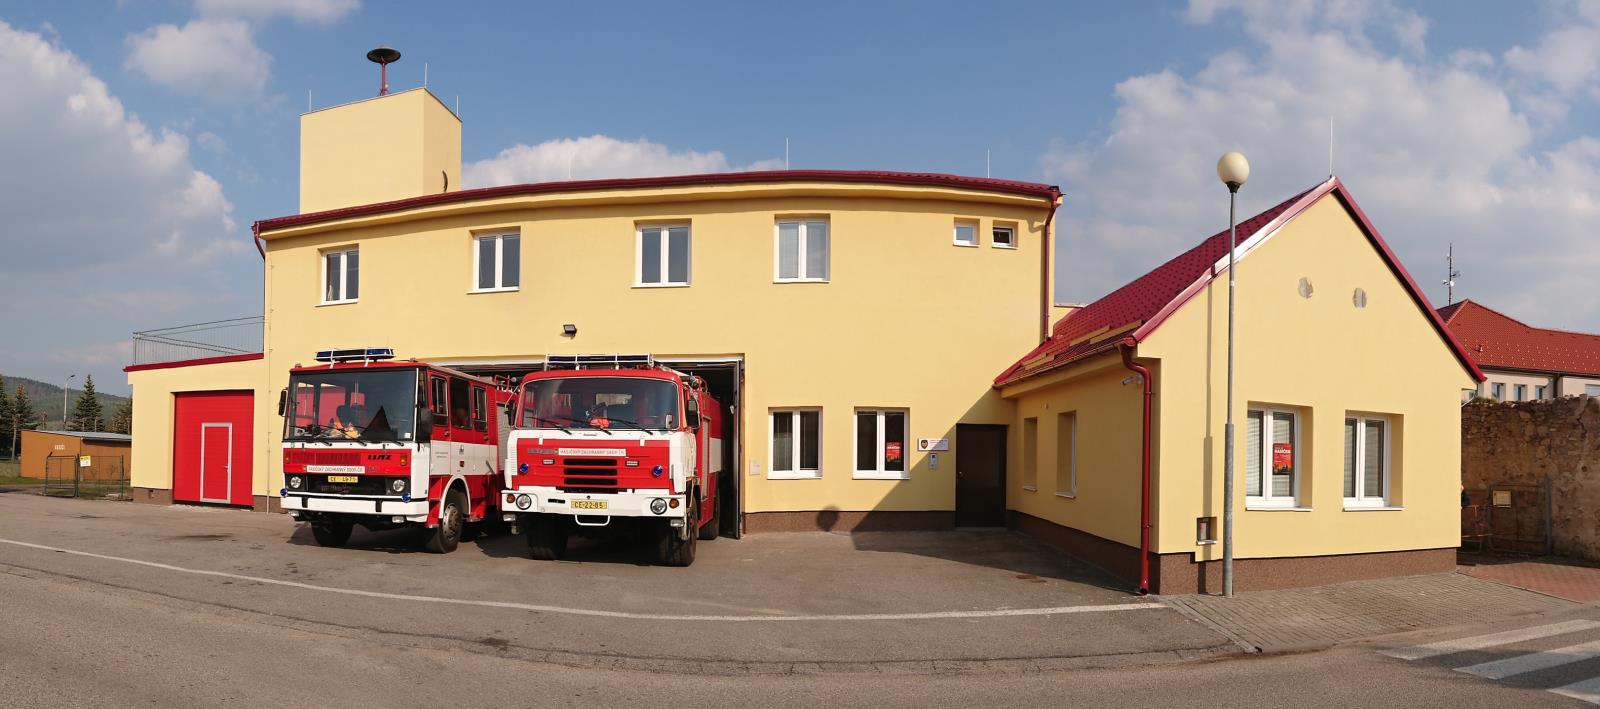 Požární stanice Křemže